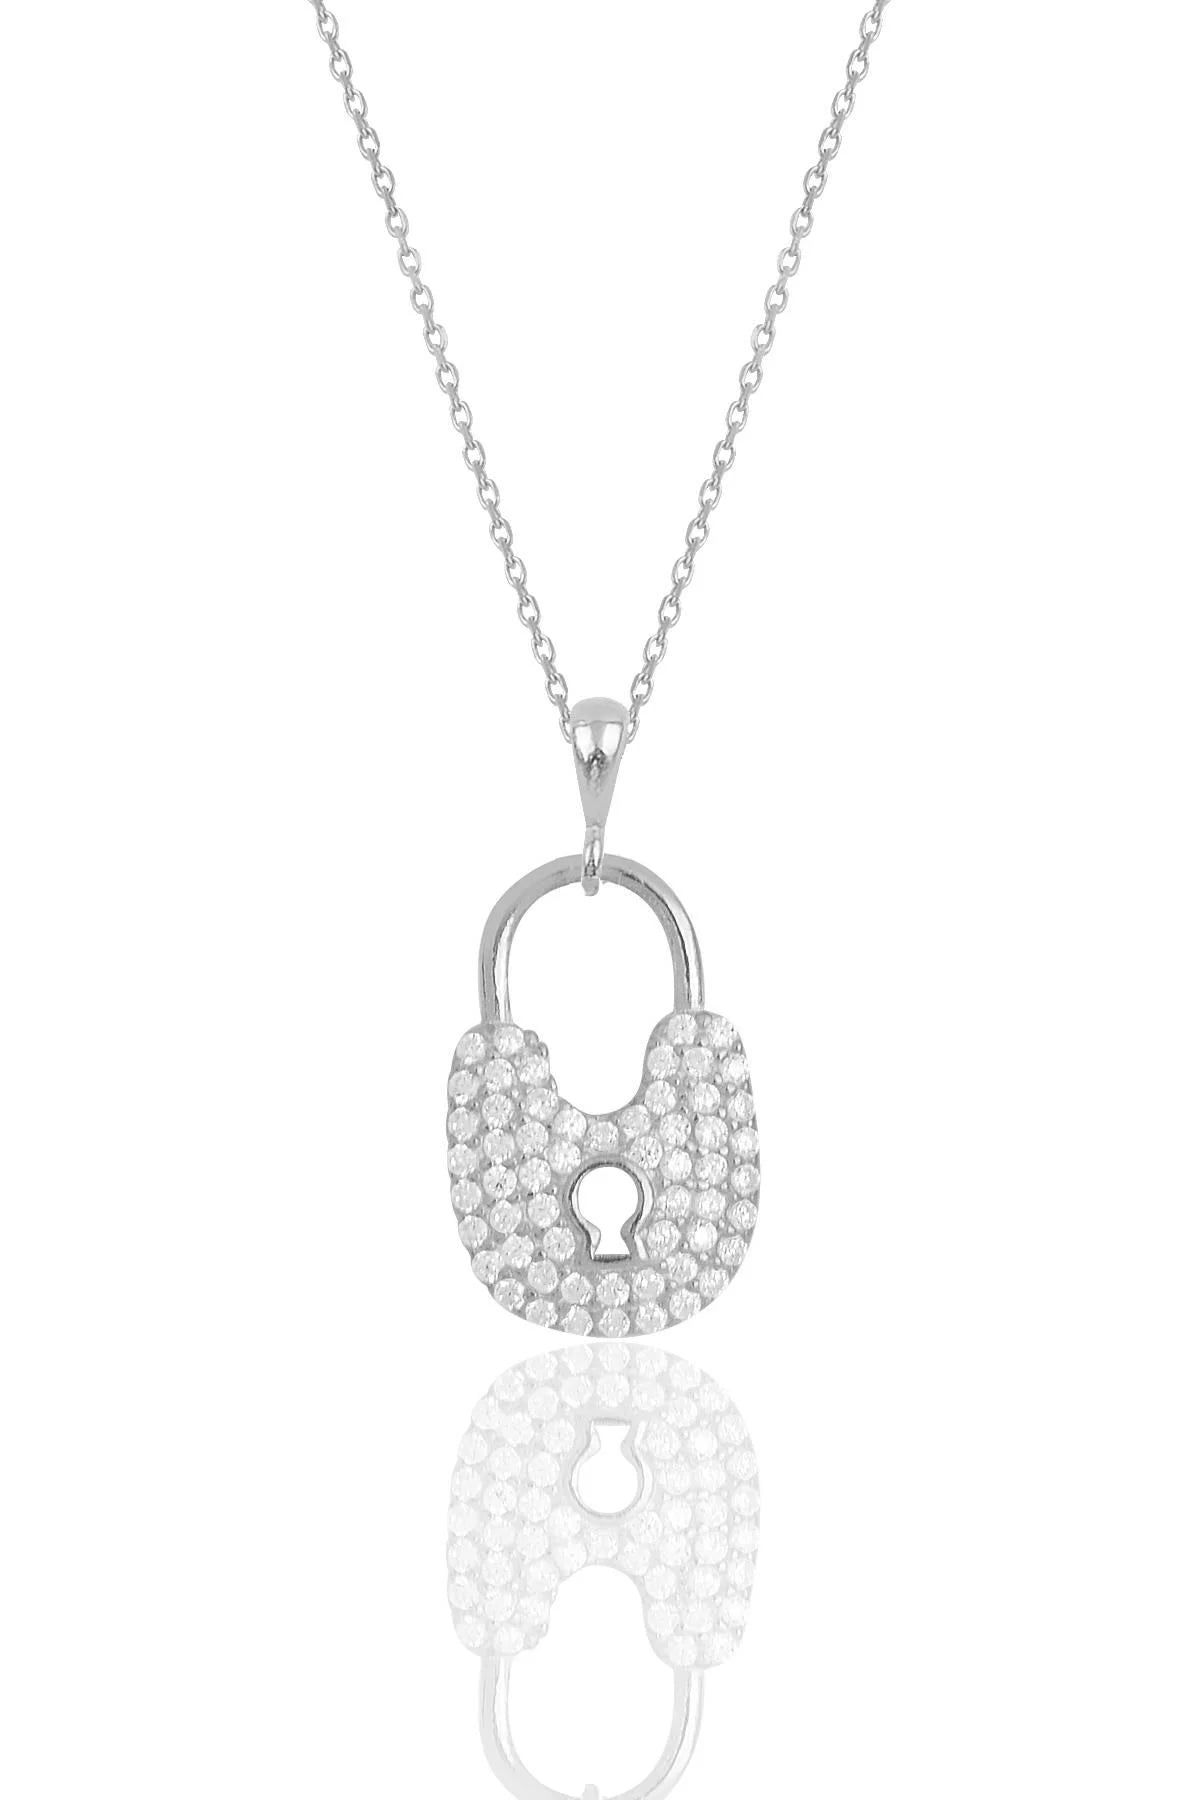 Heda Silver Lock Necklace - heda collection